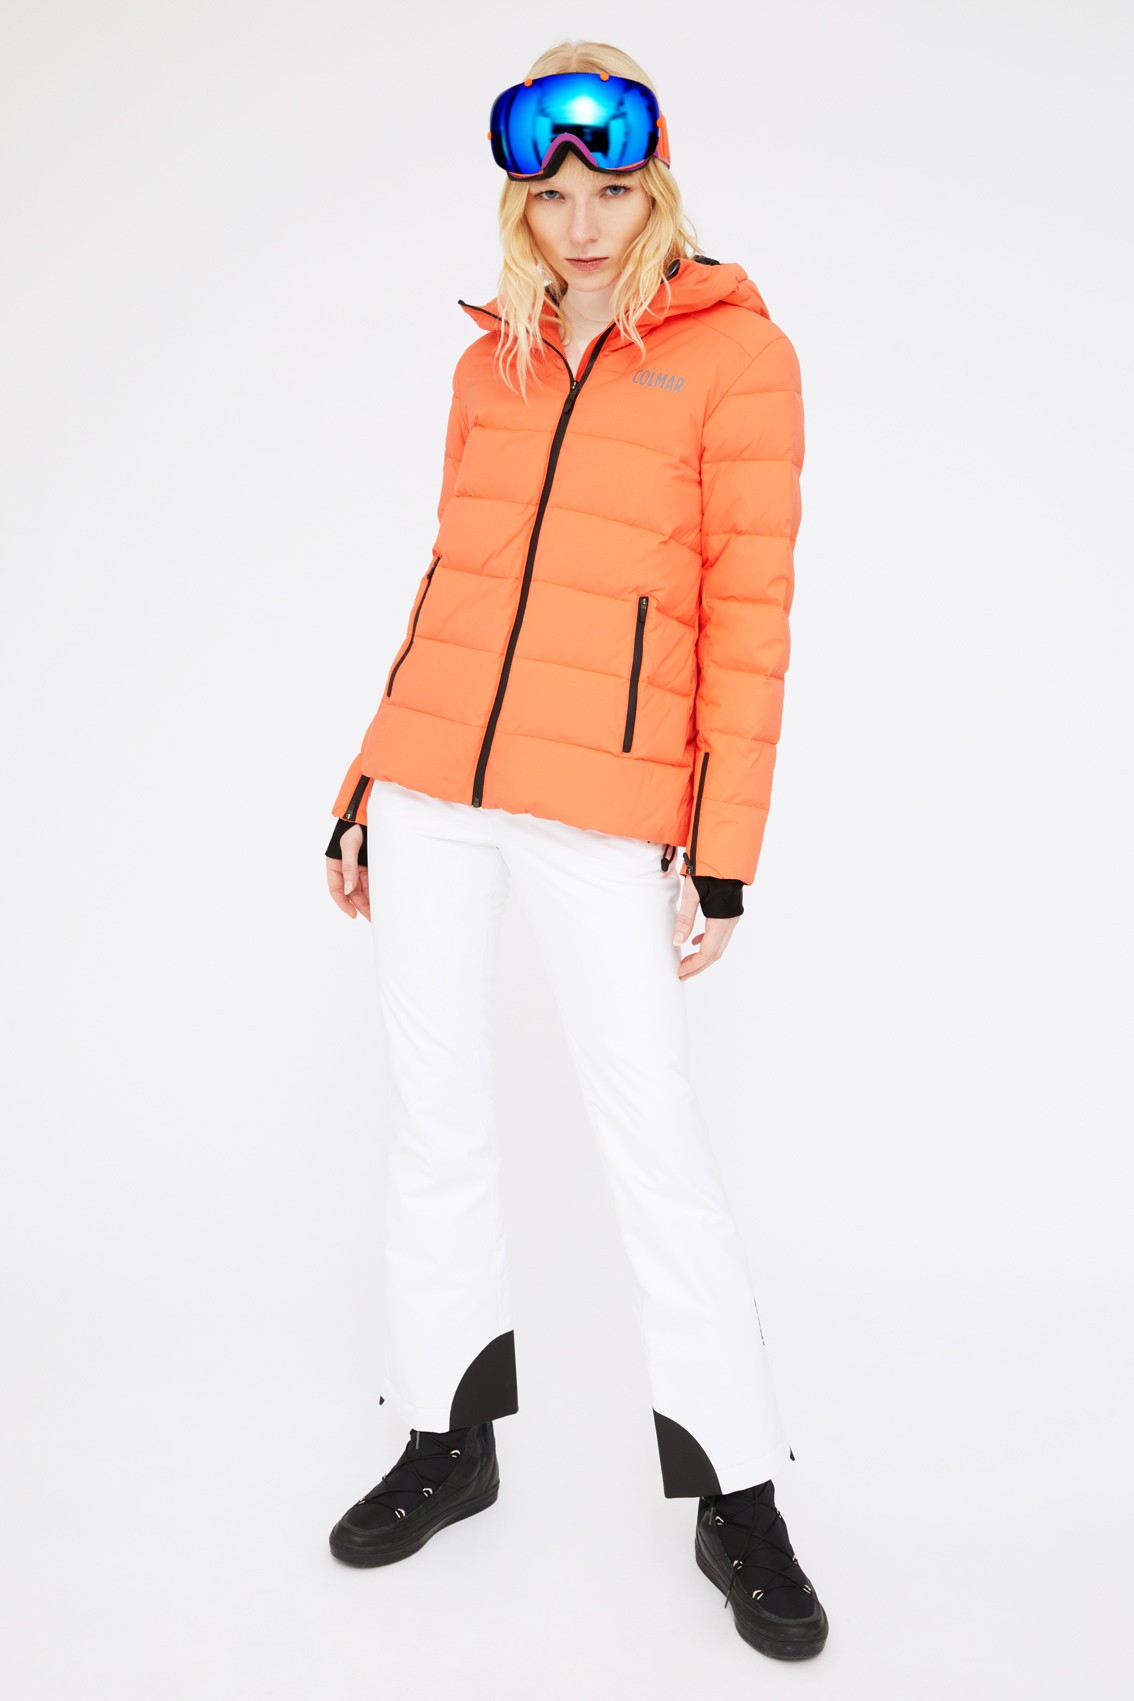 Noleggia online Completo con giacca arancione by Colmar | Drexcode